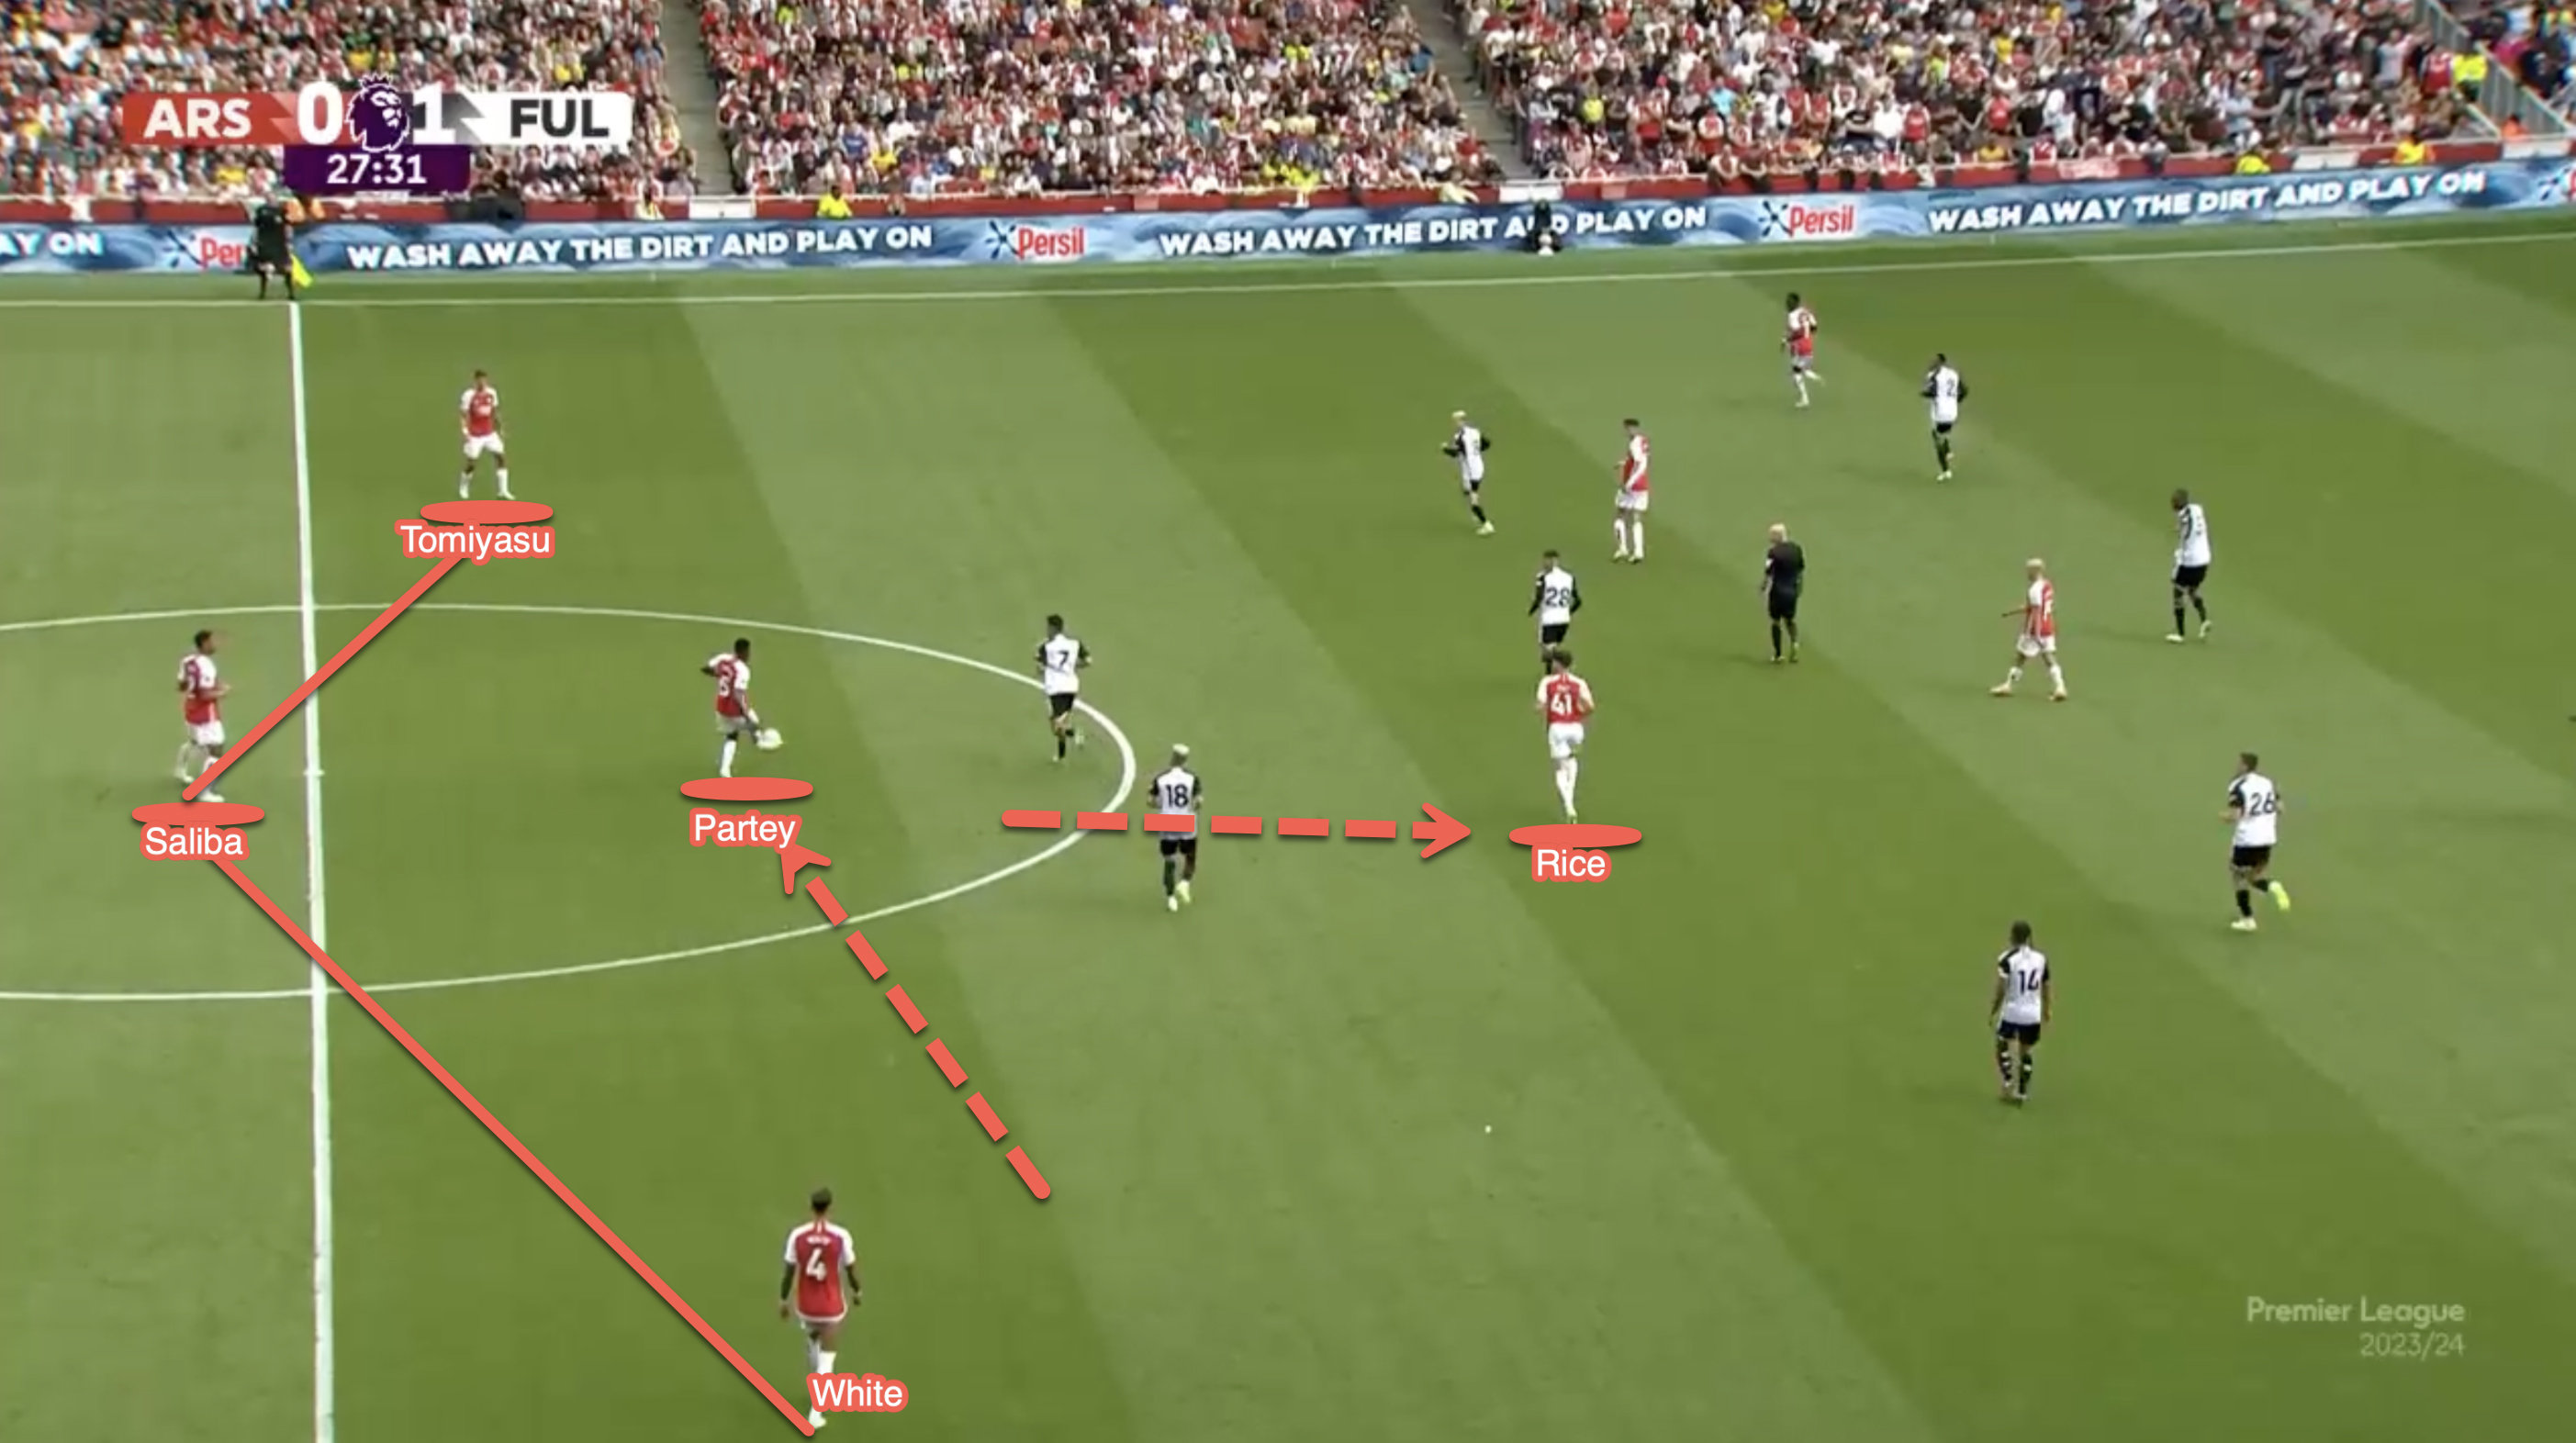 Dieses Mal sehen wir eine andere Form im Mittelfeld von Arsenal, da Partey nach innen rückt und als tiefster Mittelfeldspieler agiert, wobei Rice vor dem Ball zwischen den Reihen der gegnerischen Verteidigung positioniert ist